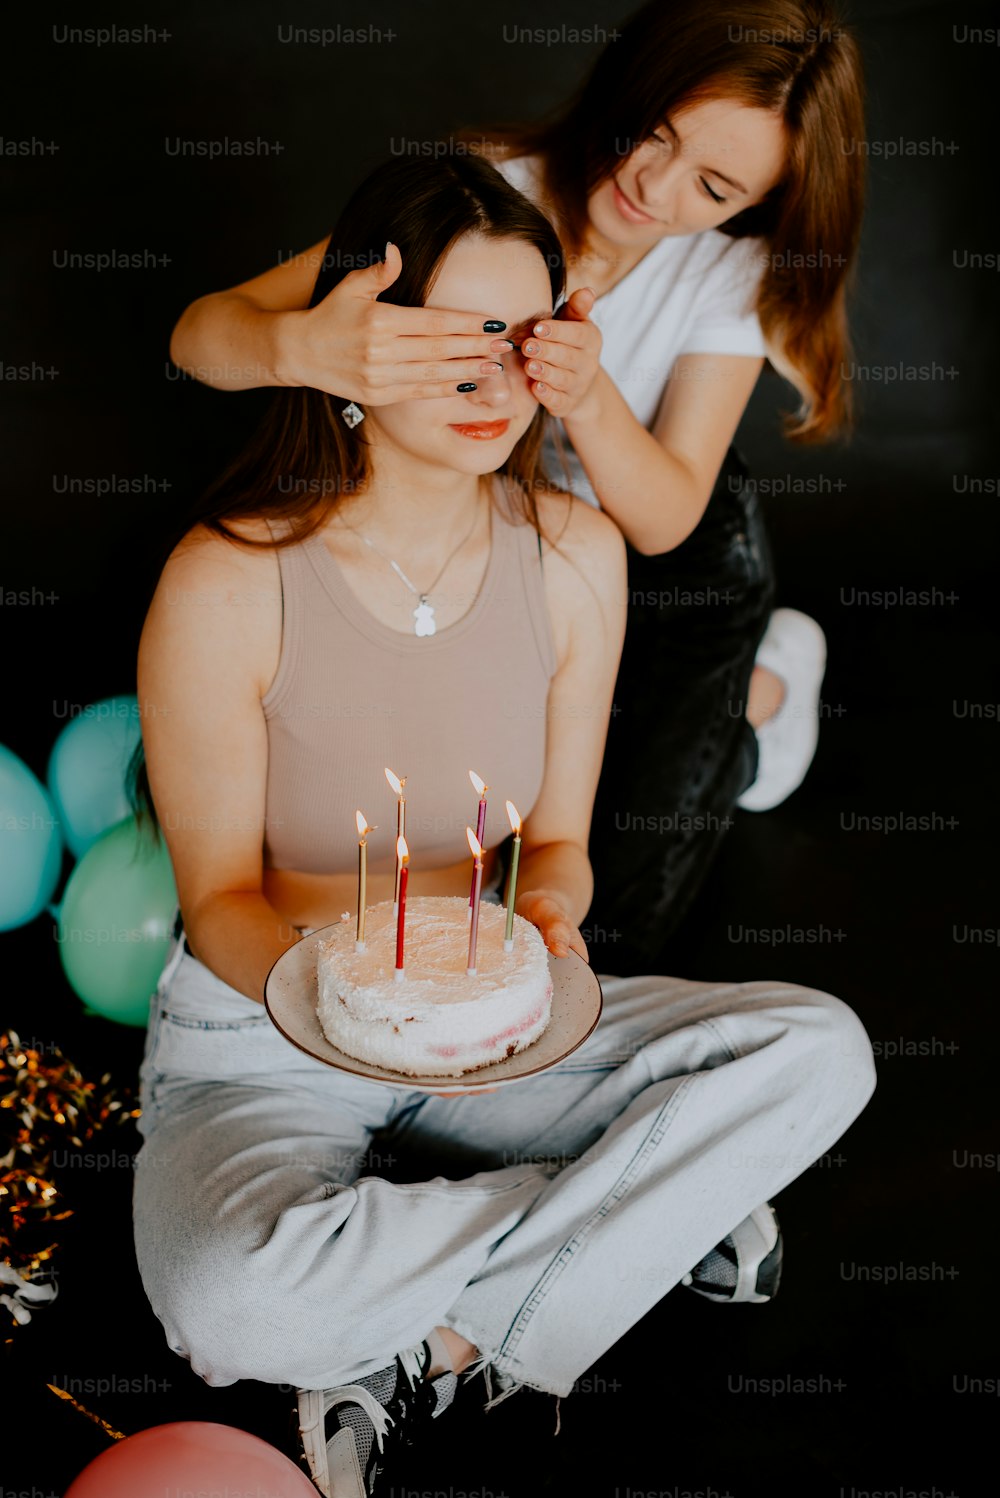 촛불이 달린 케이크 앞에 앉아 있는 여자